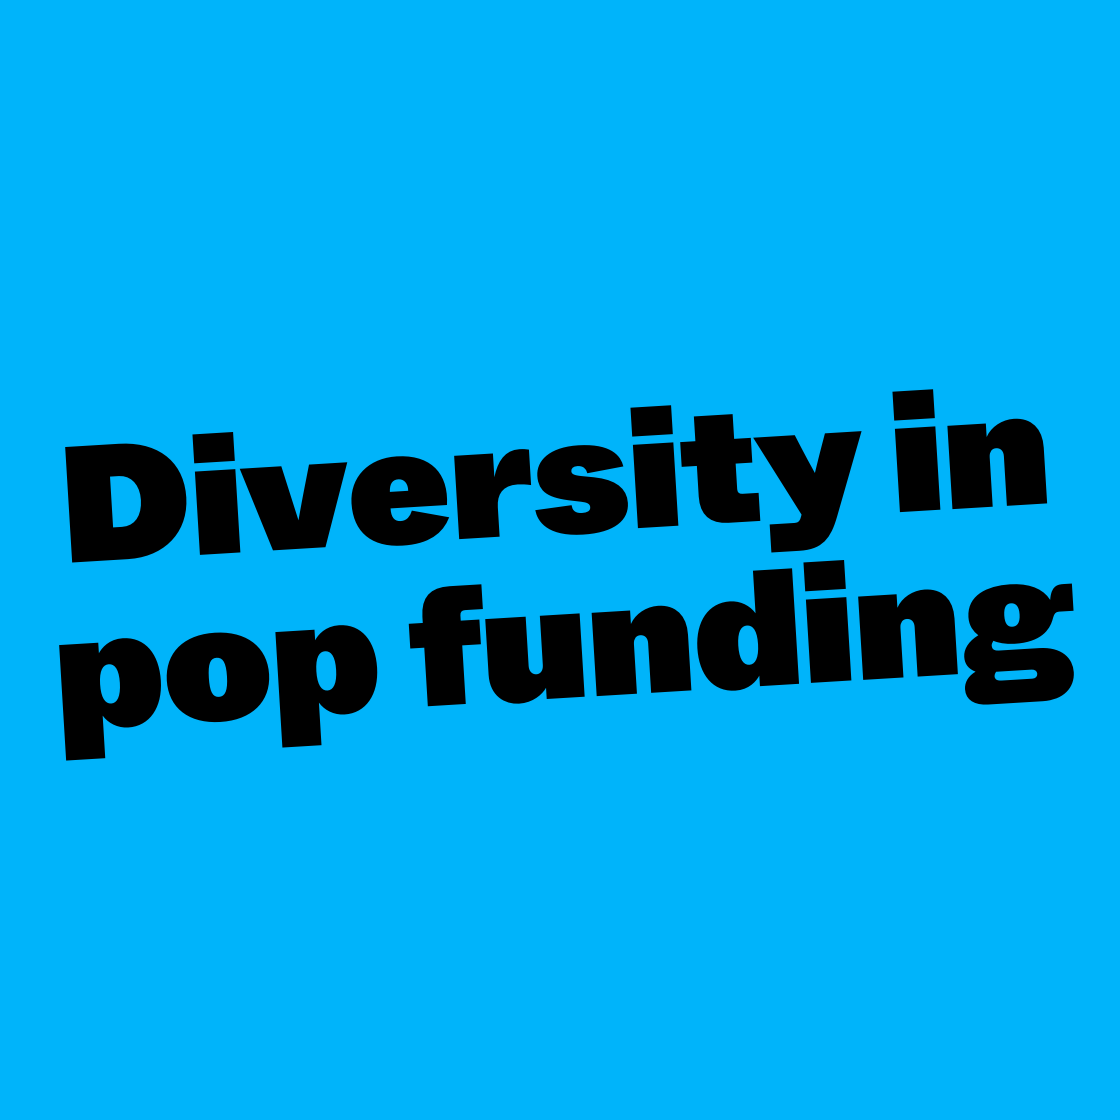 Diversity in pop funding